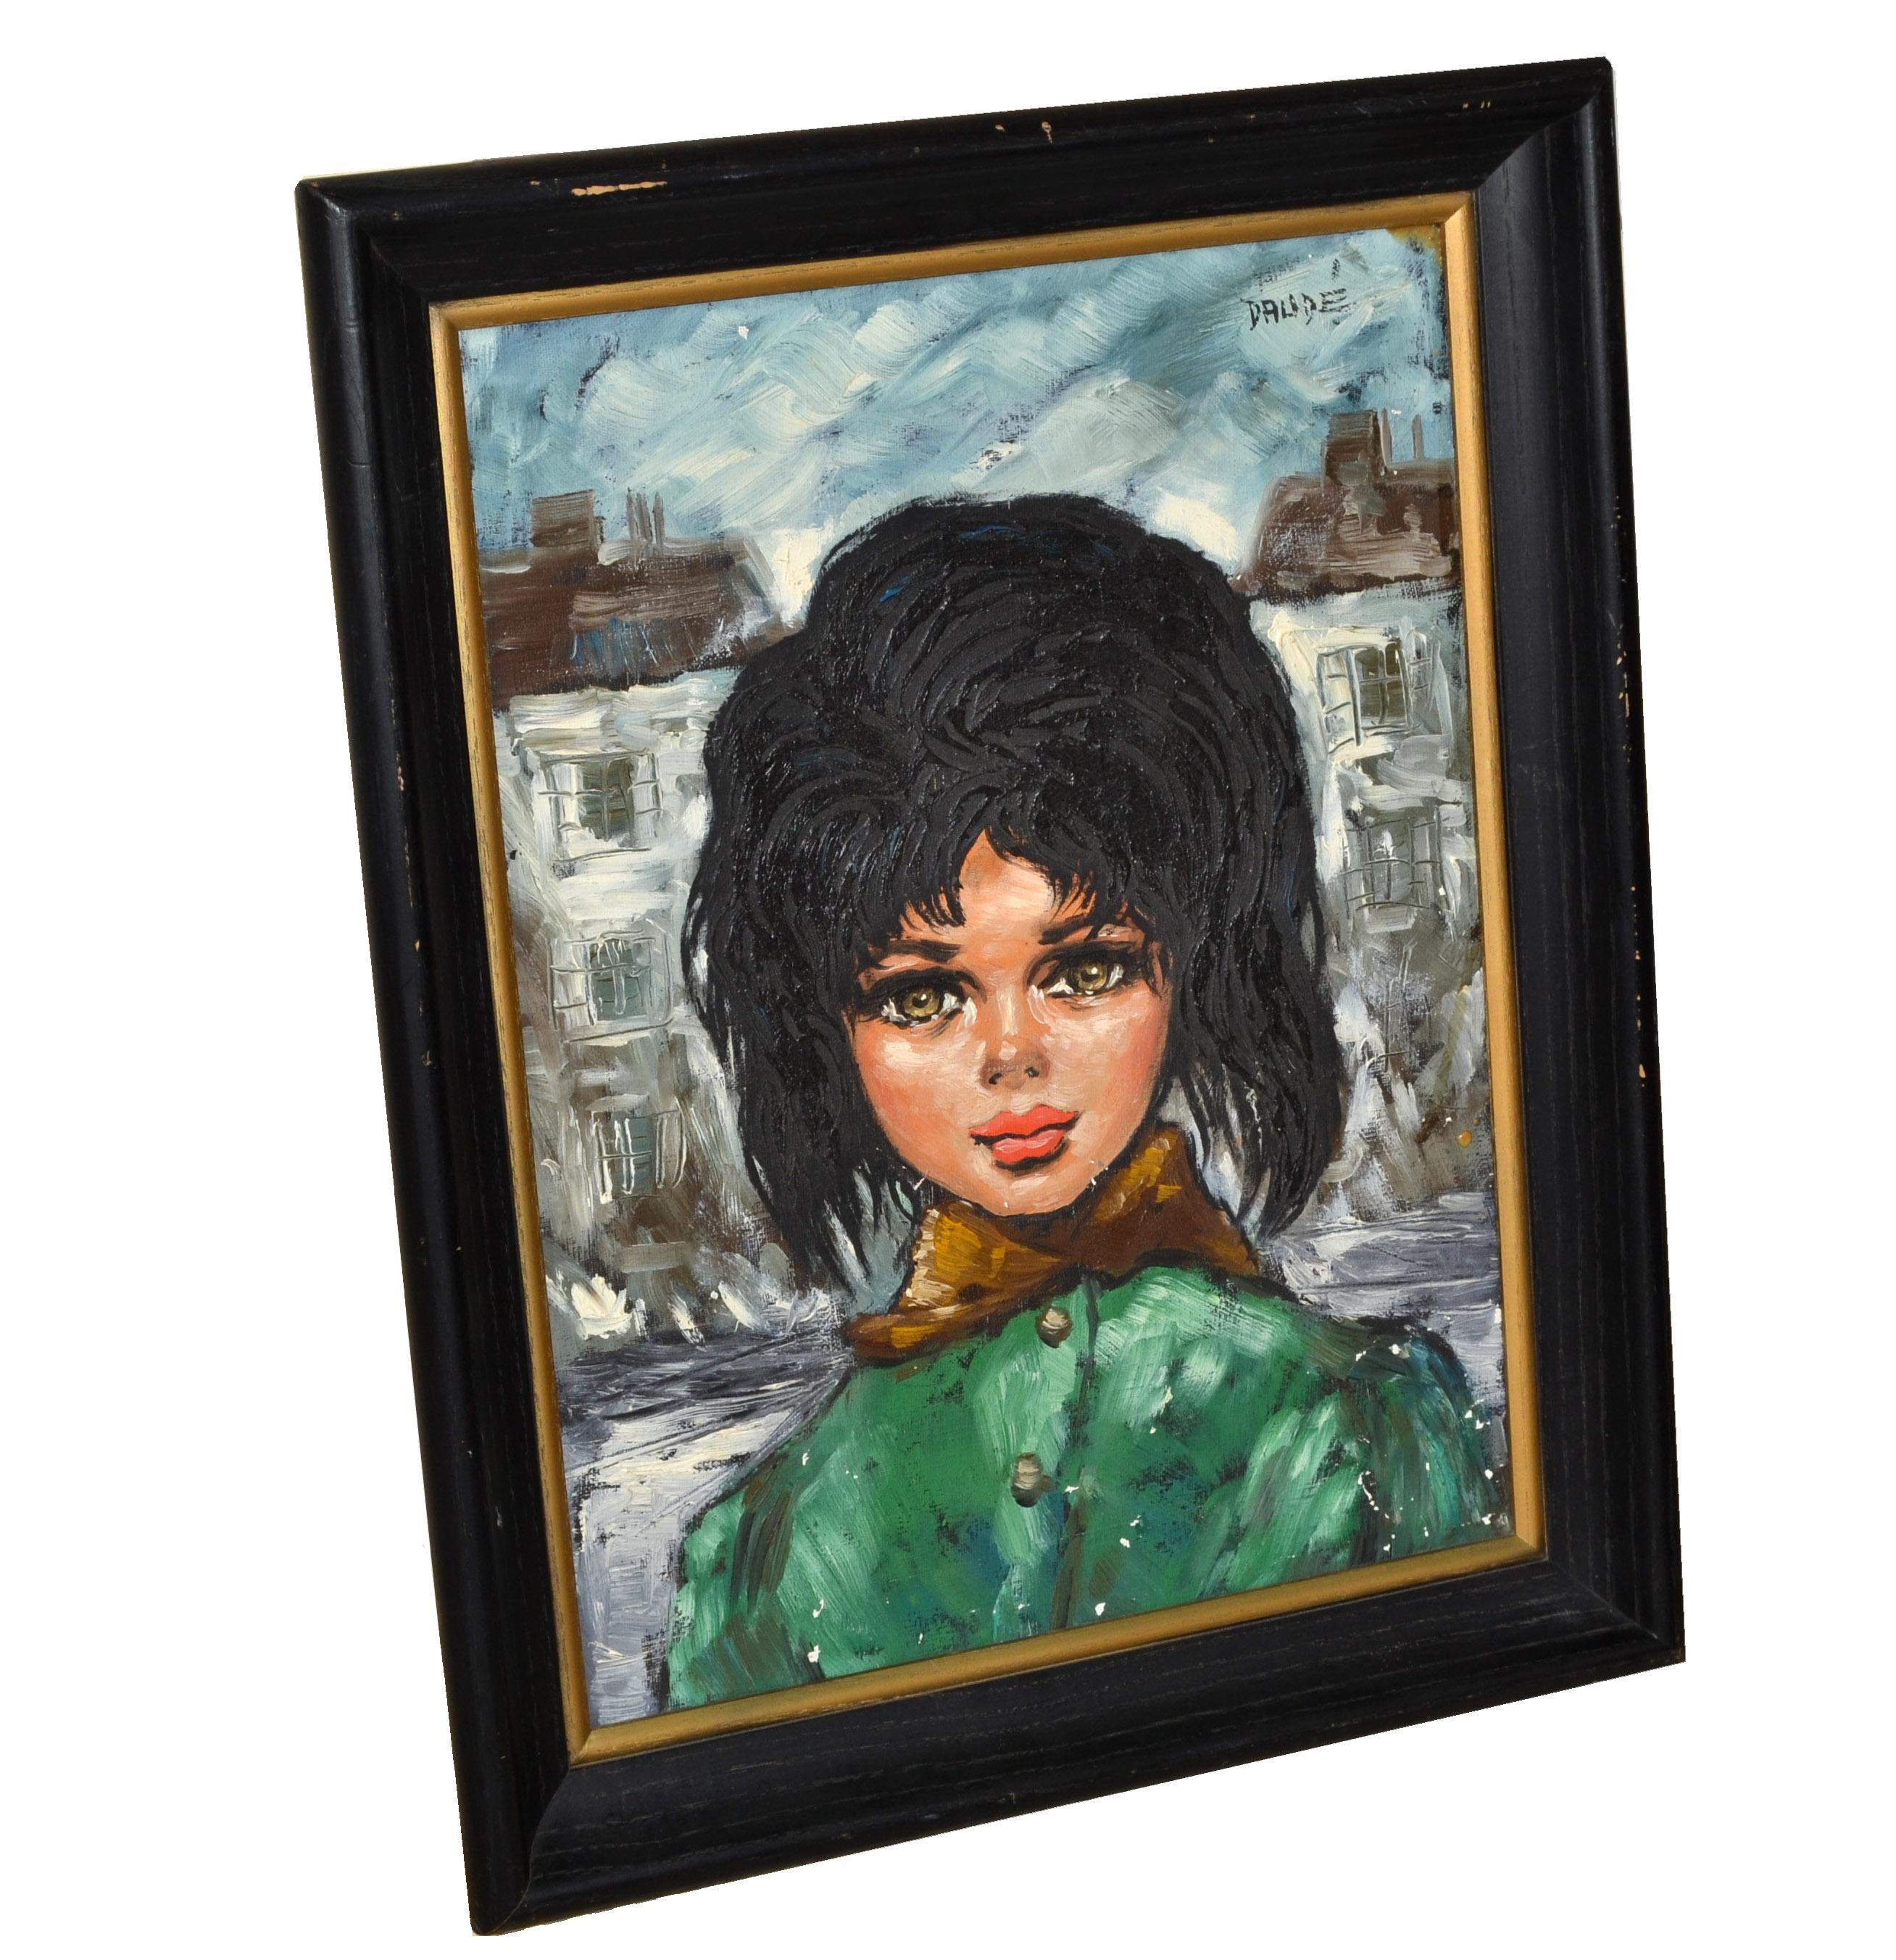 Encadré signé Daude Vintage Mid-Century Oil Painting Cityscape French Girl with Black Hair Brown Eyes Green Coat.
Peinture à l'huile sur toile datant des années 1960 représentant une jeune fille aux cheveux noirs de jais et aux yeux bruns portant